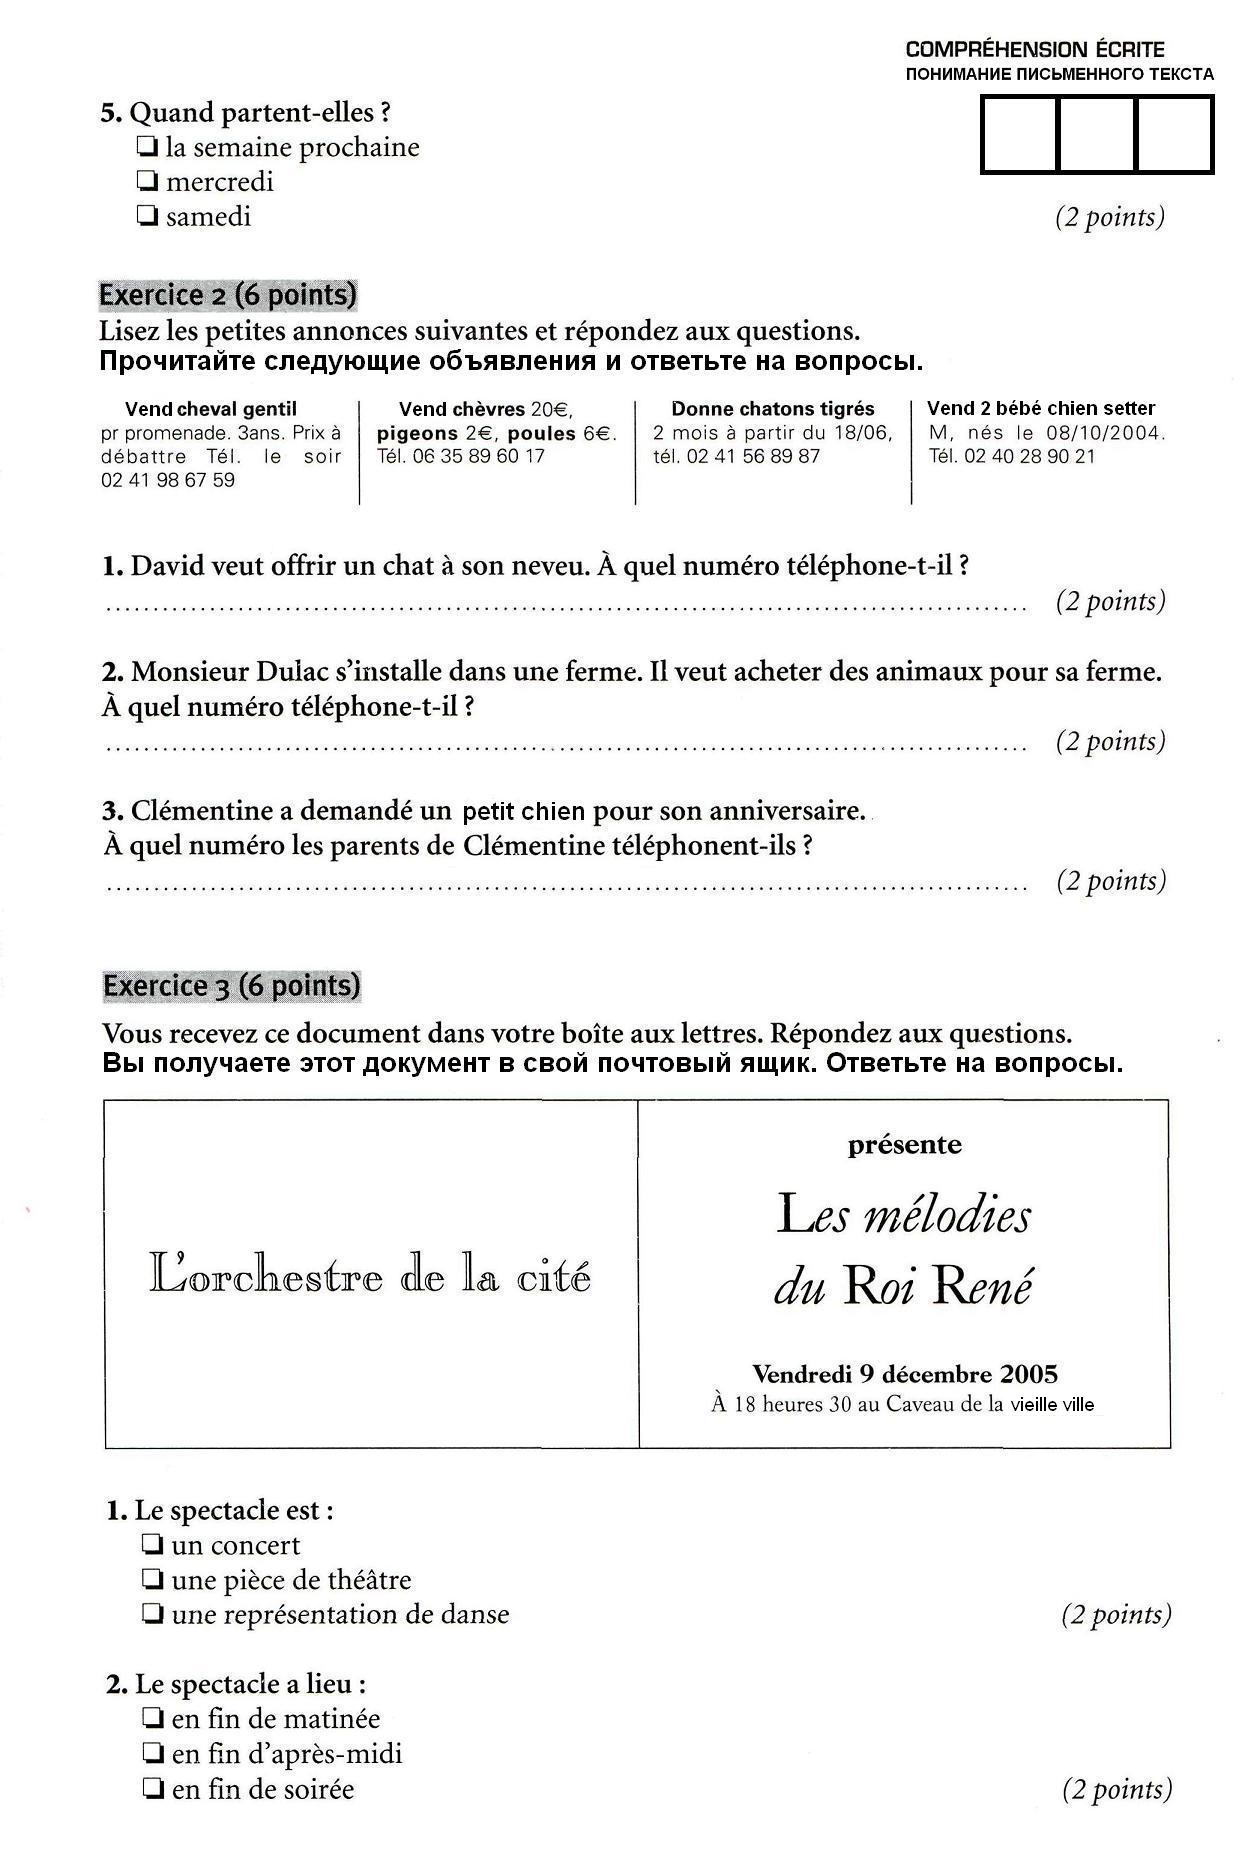 Входной и итоговый контроль по французскому языку в 5 классе (с ответами)